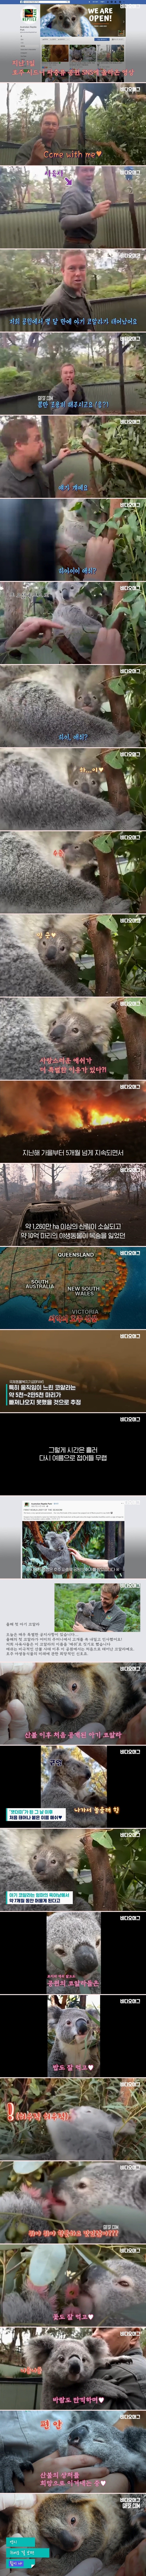 호주 산불 이후 처음 공개된 아기 코알라.jpg